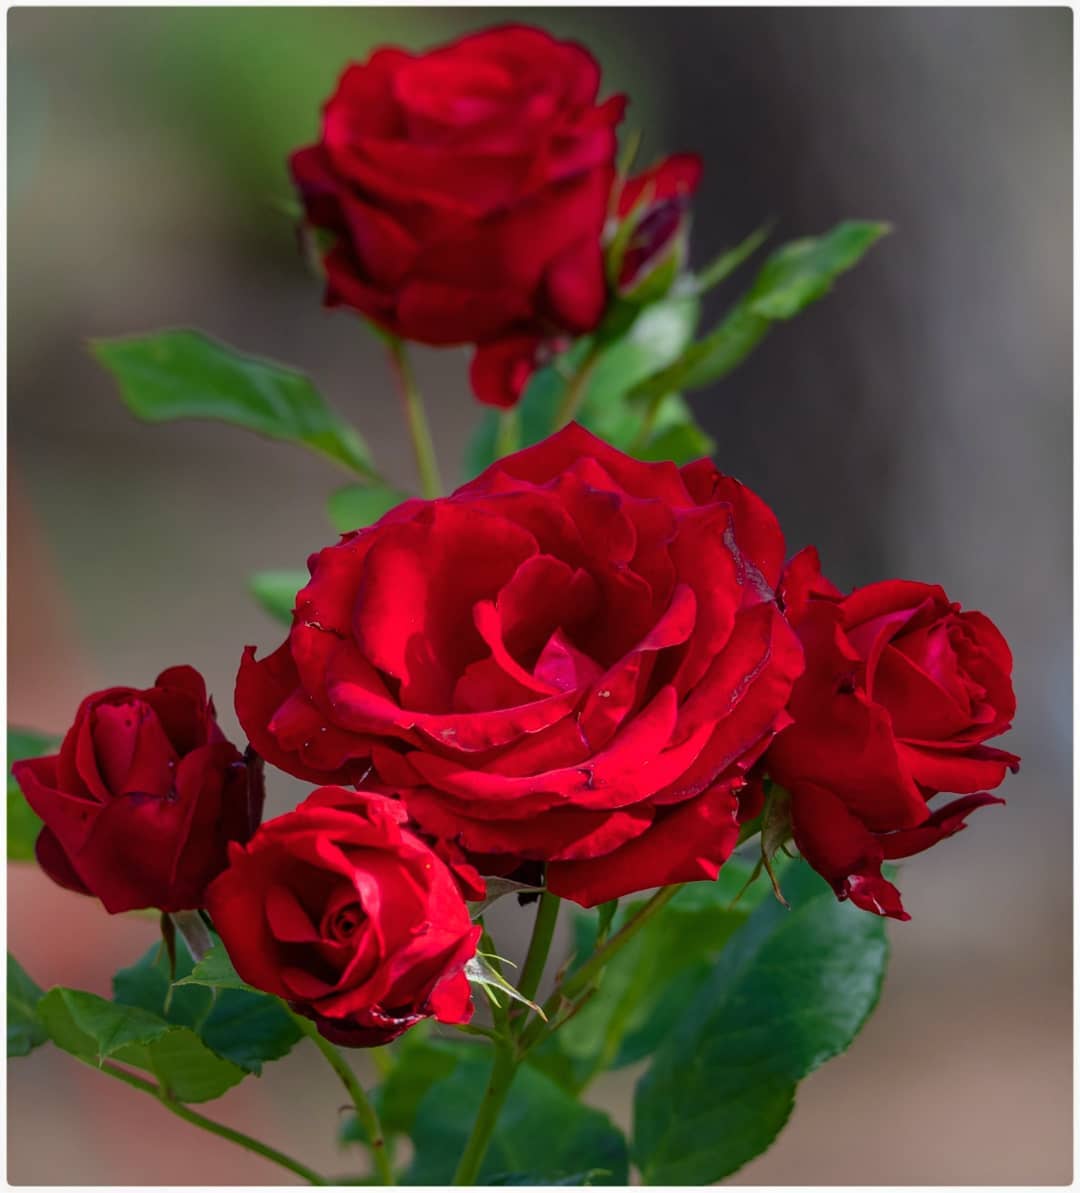 Cuidado de las rosas: aprenda a plantar, cultivar y cuidar las rosas